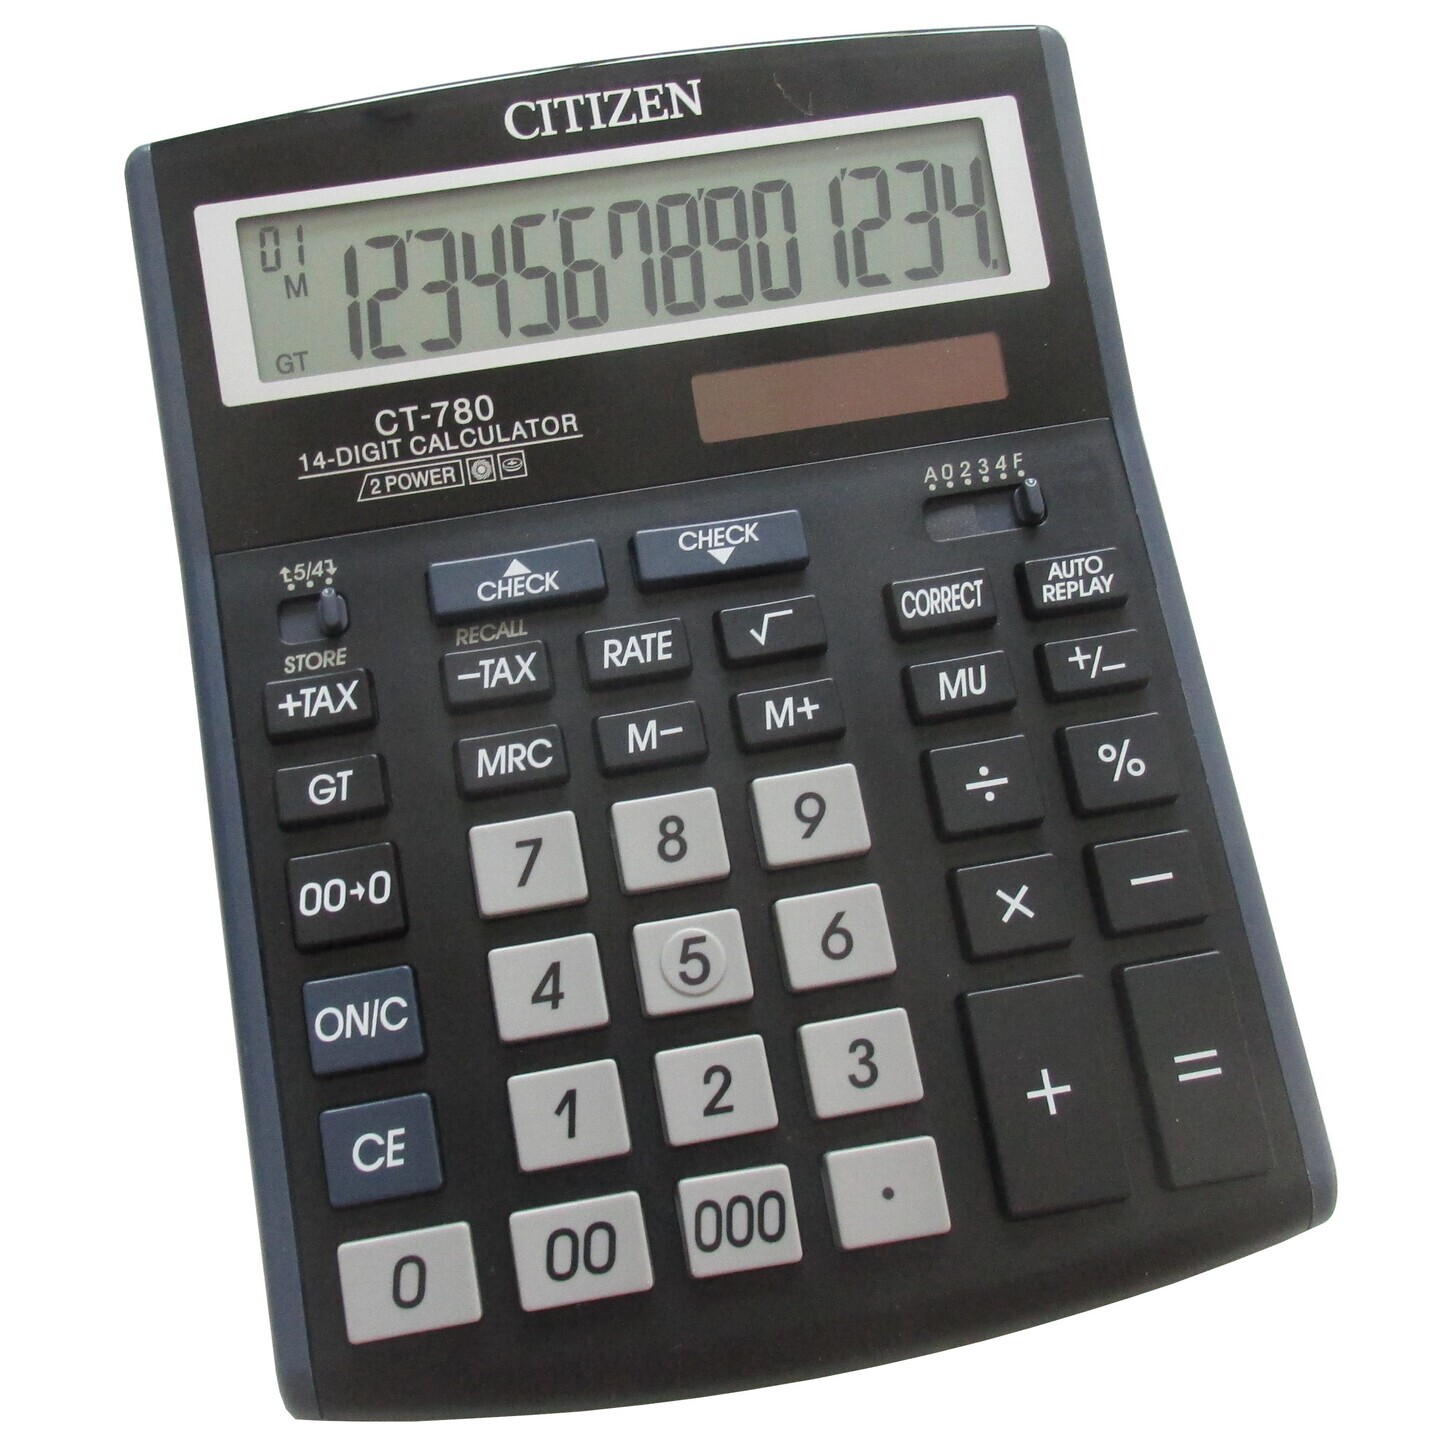 Citizen CT-780 Check & Correct Desktop Calculator